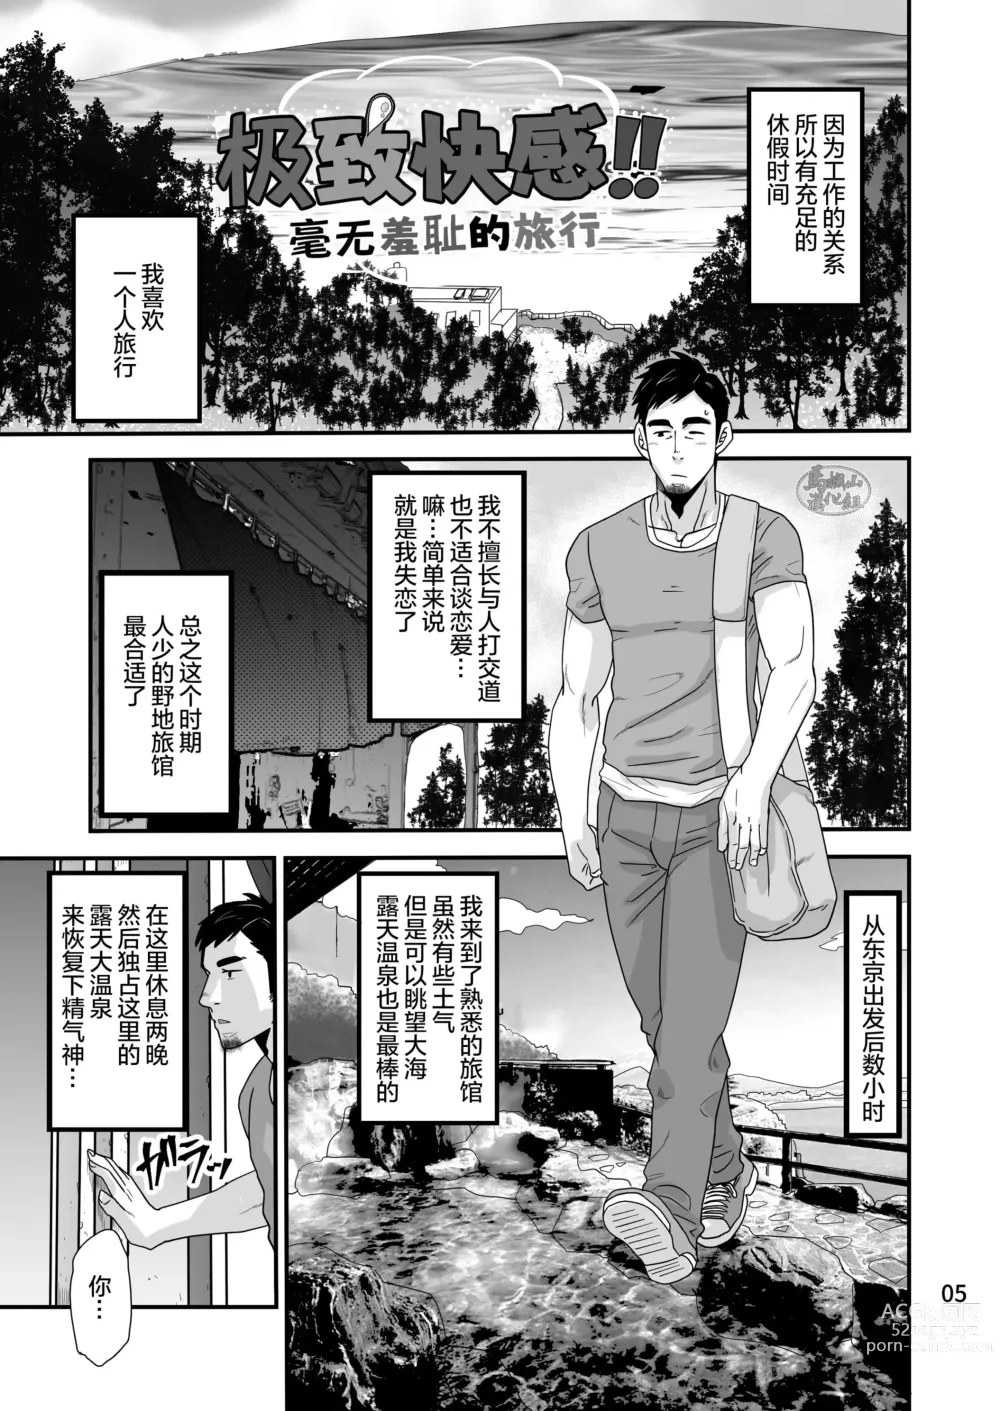 Page 5 of manga 松武互悦同衆!!_旅の恥はヌキすて